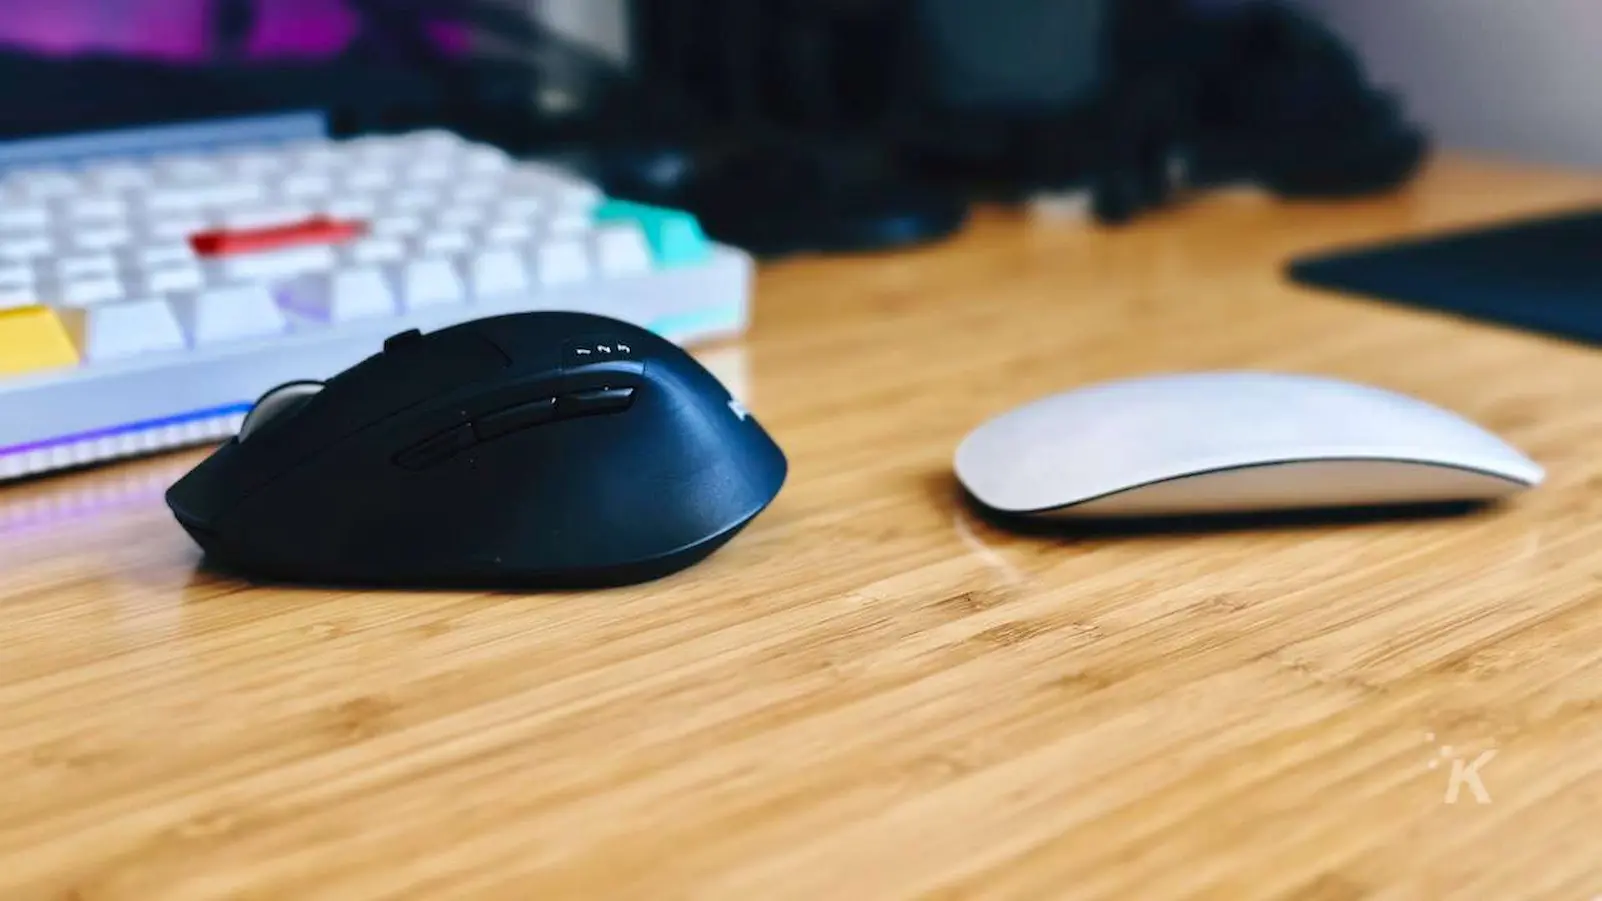 オフィス デスク上の Apple Magic Mouse と Logitech m720 マウスの比較画像